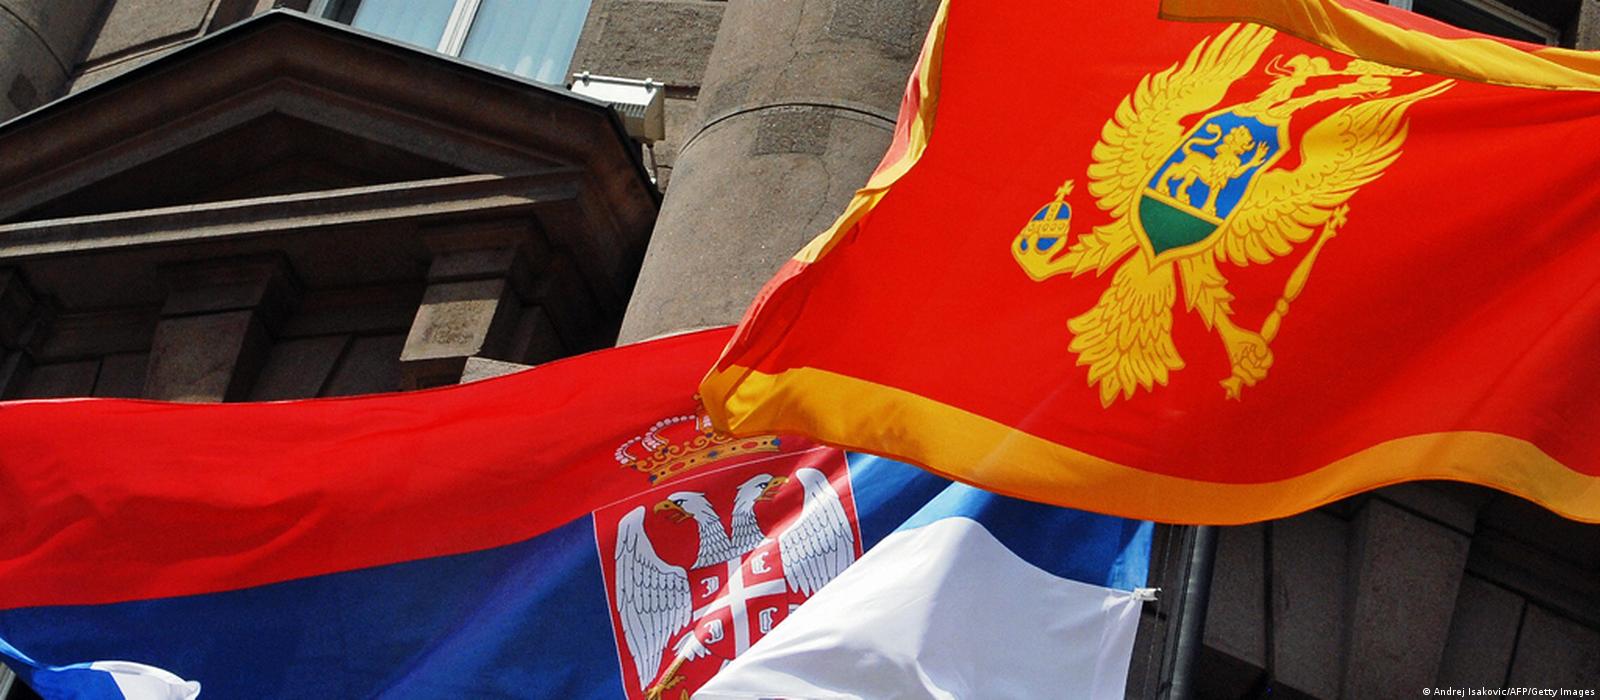 Presidentes da Sérvia e Montenegro tentam reaproximação